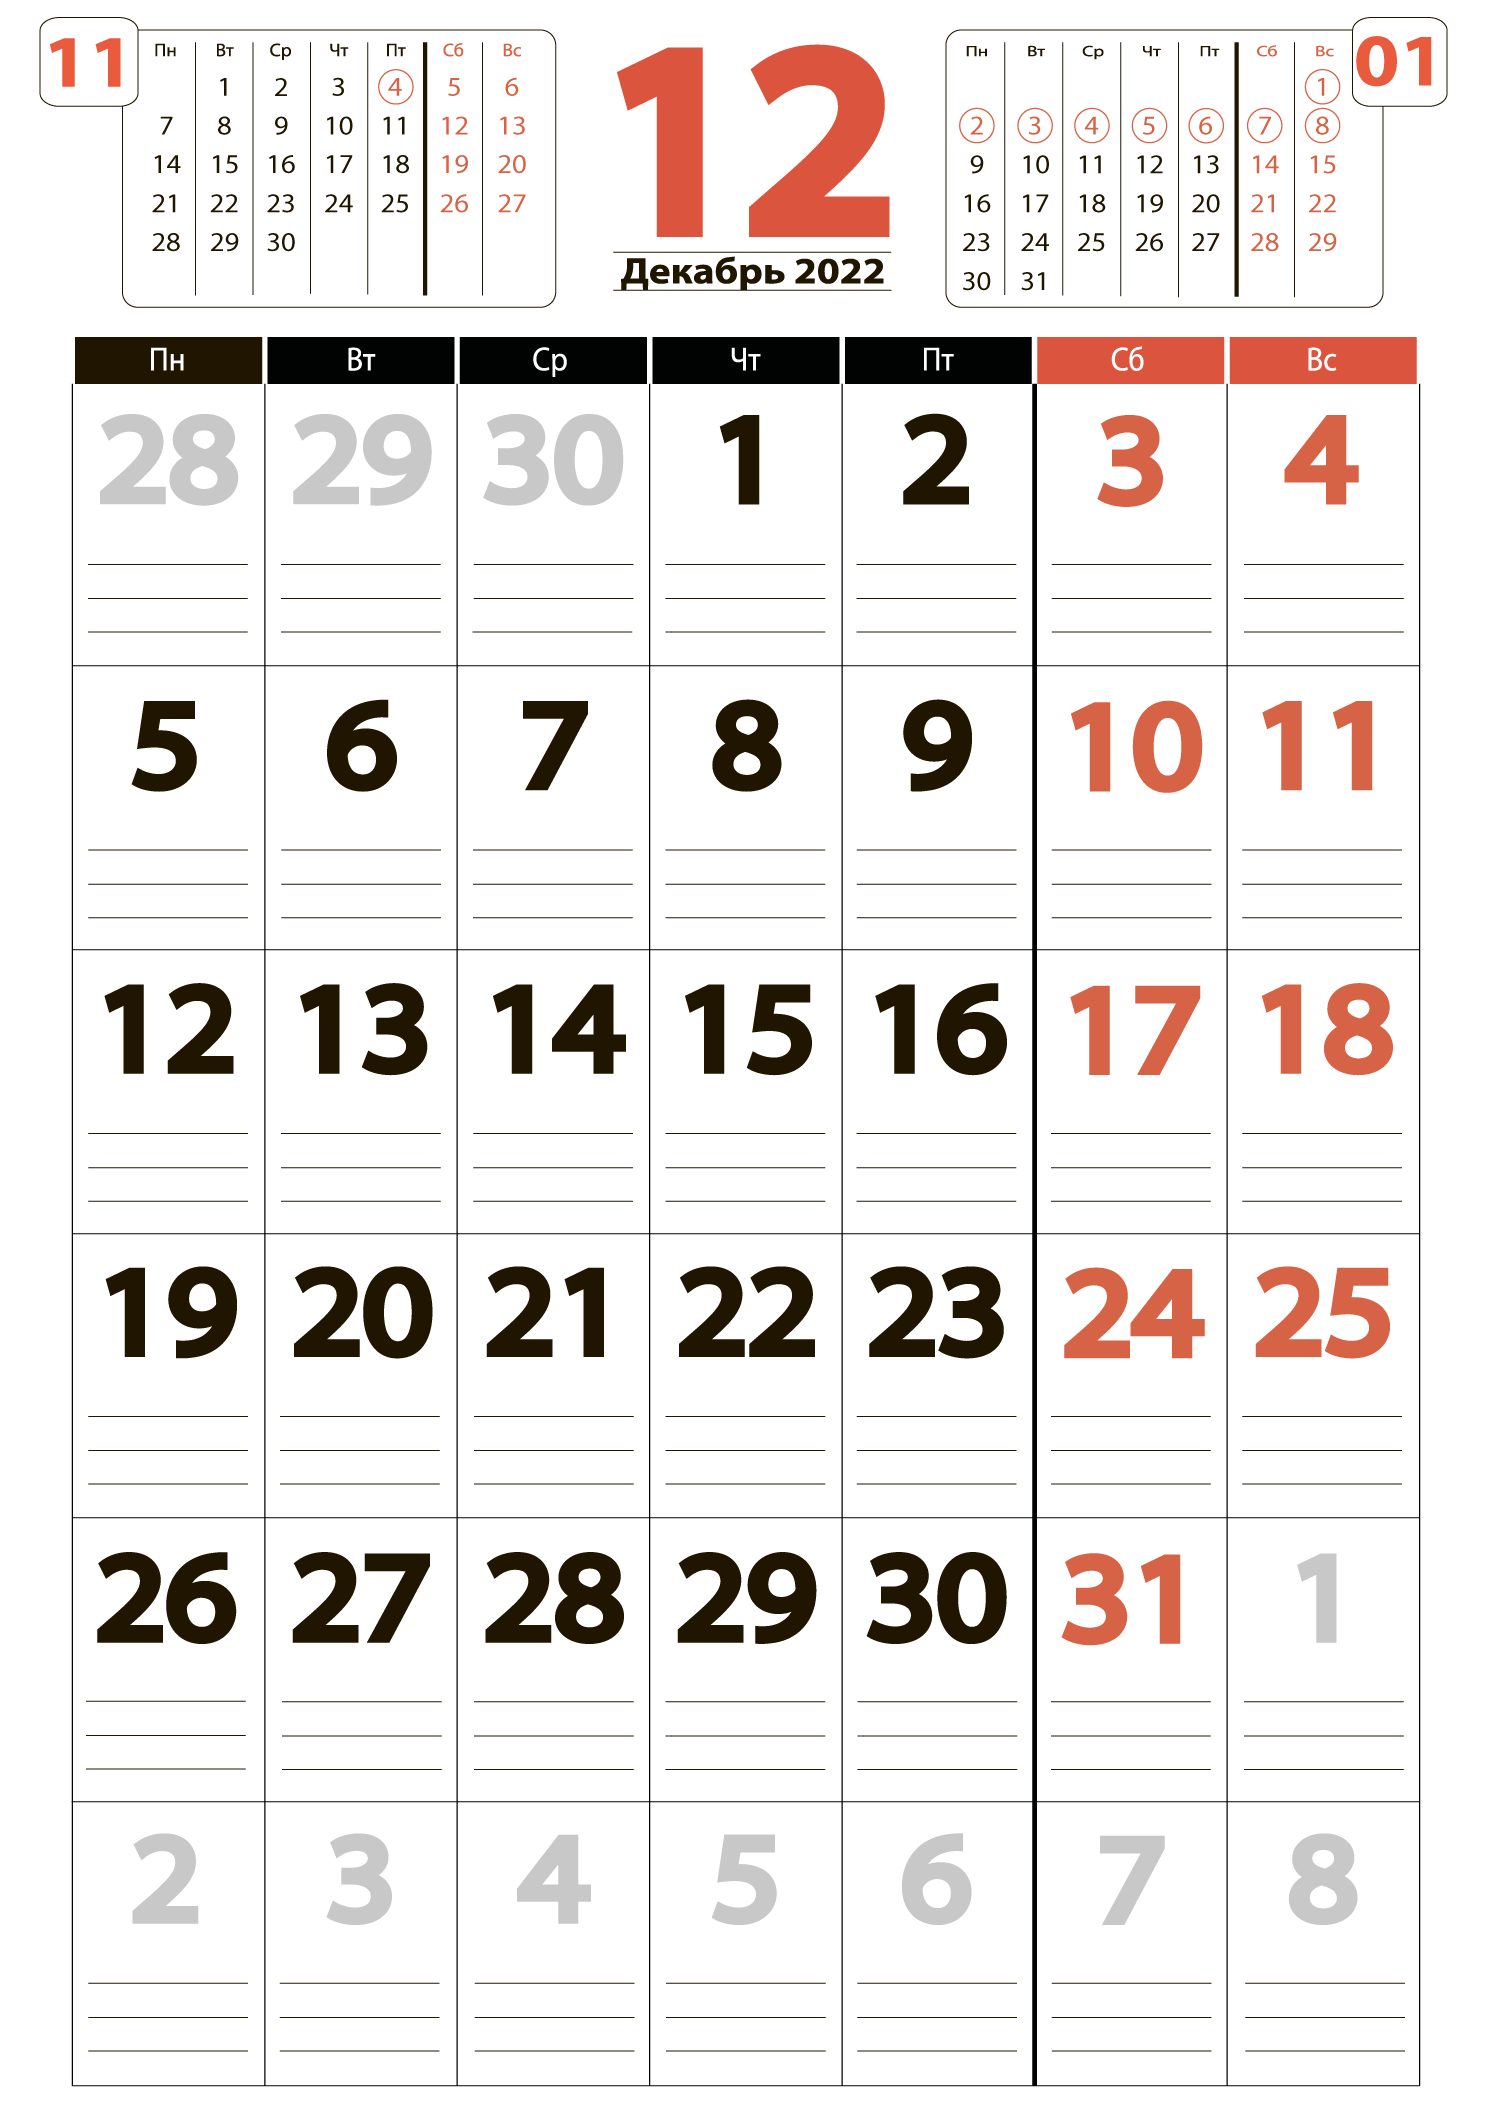 Календарь на декабрь 2022 - скачать